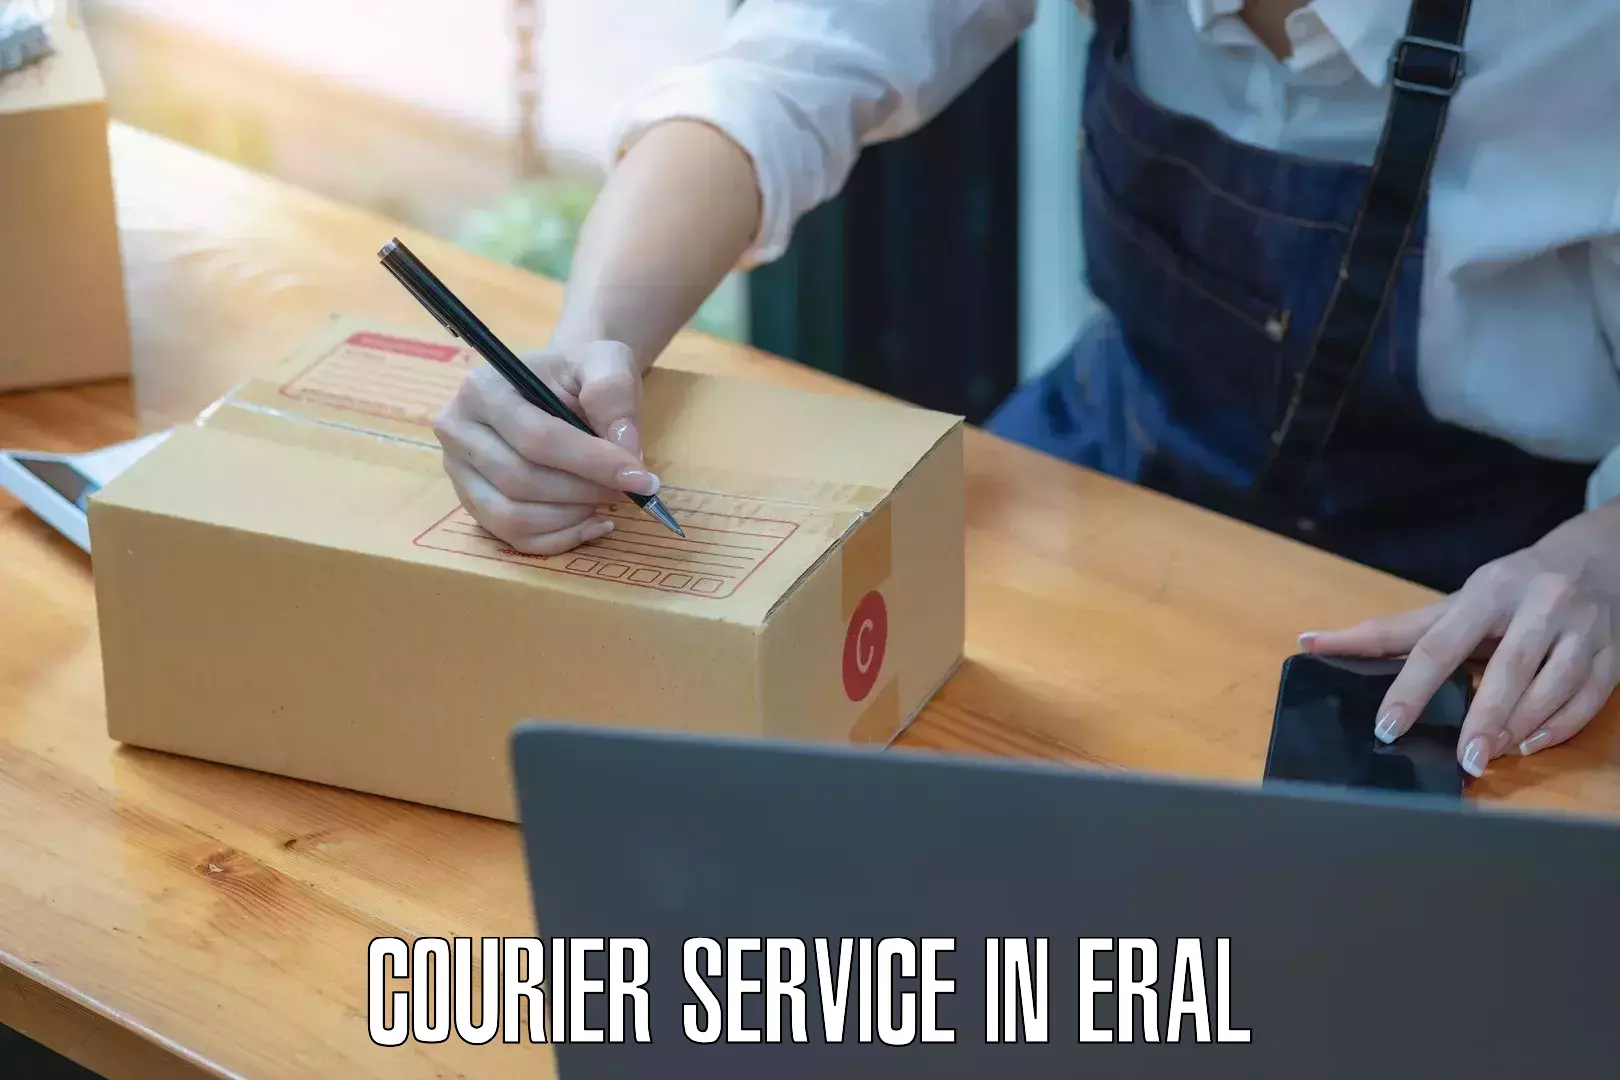 Regular parcel service in Eral